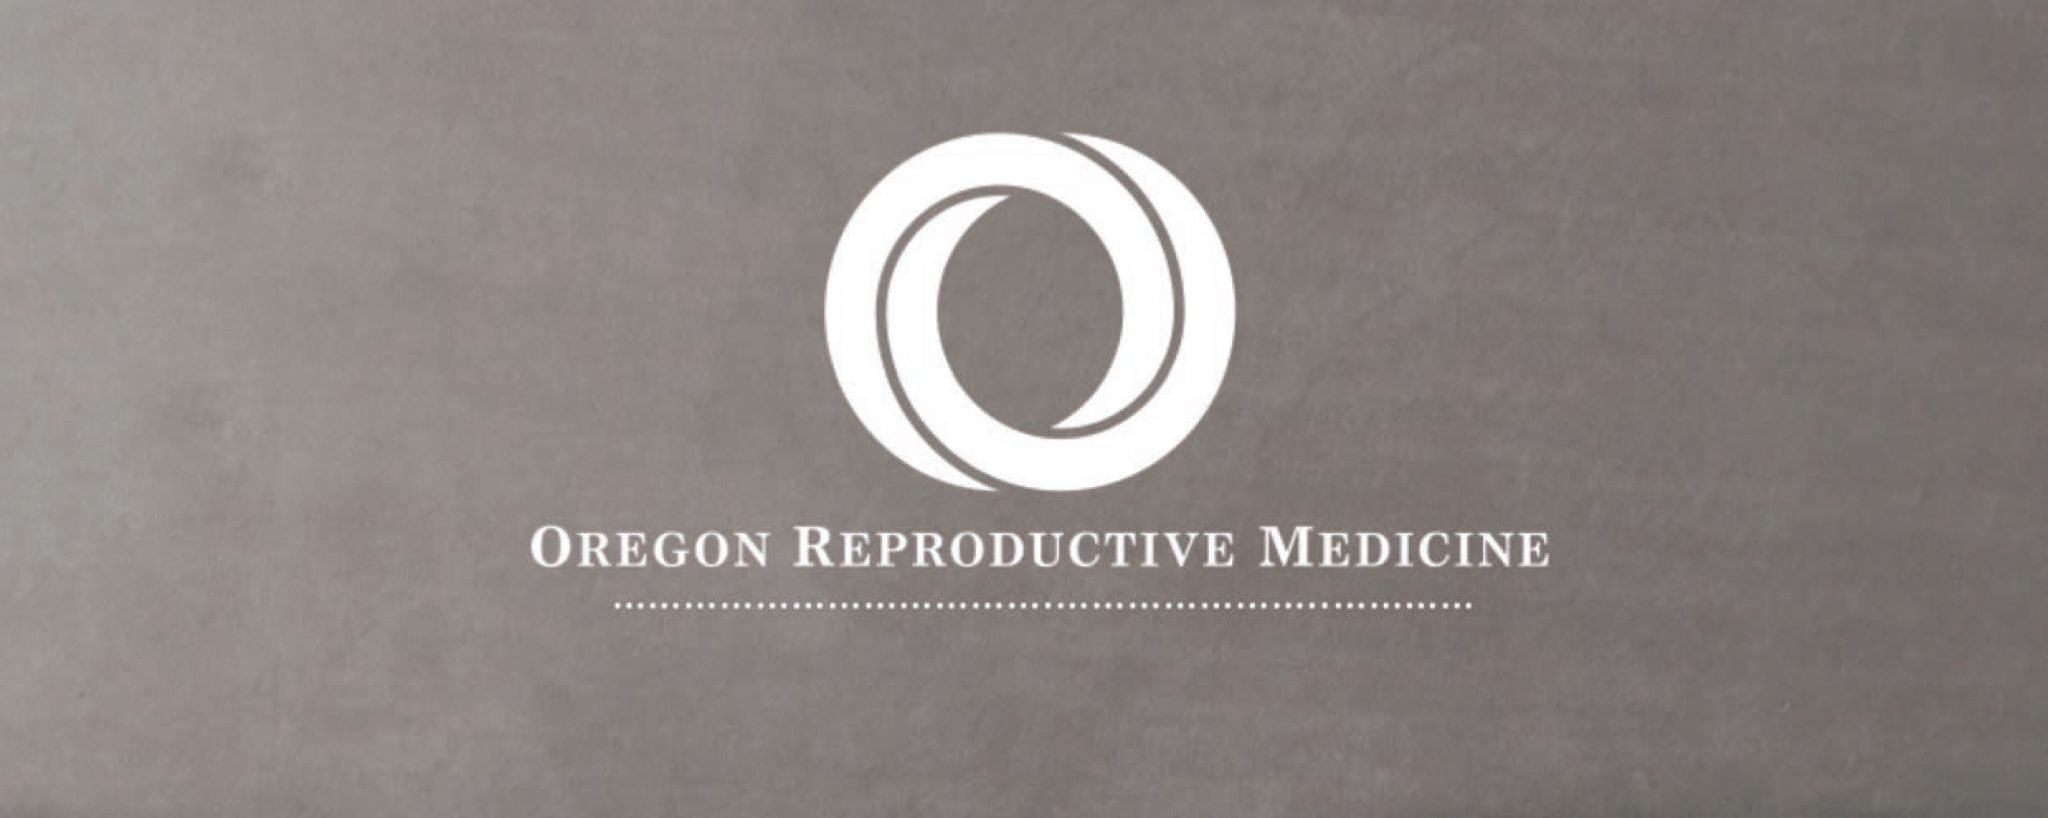 Médecine de la reproduction de l'Oregon